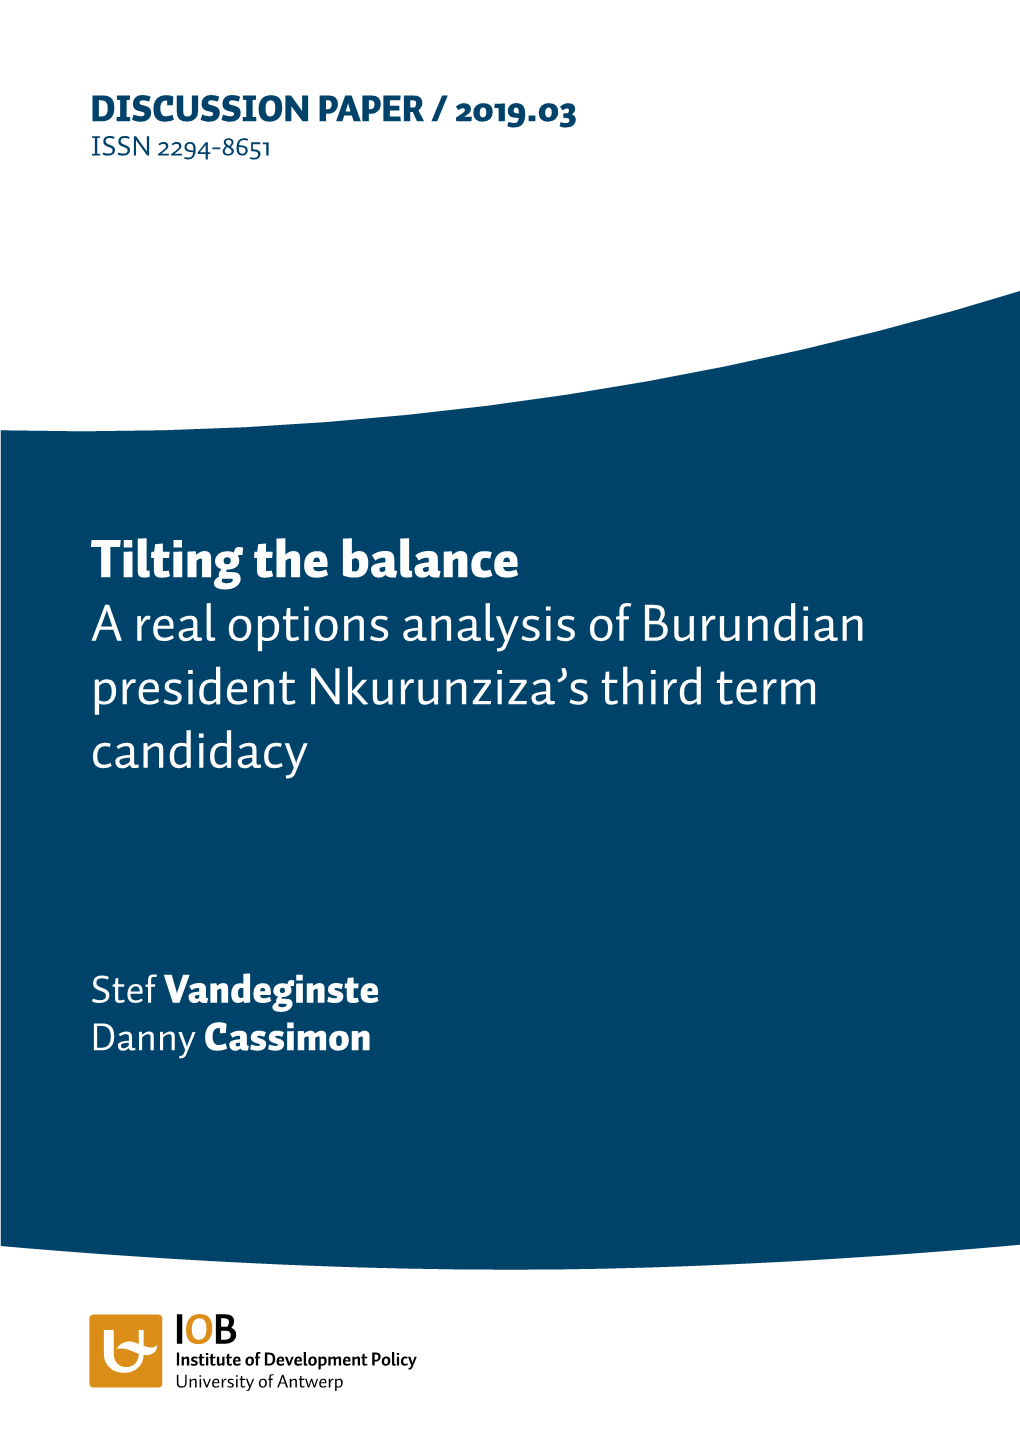 Tilting the Balance a Real Options Analysis of Burundian President Nkurunziza’S Third Term Candidacy